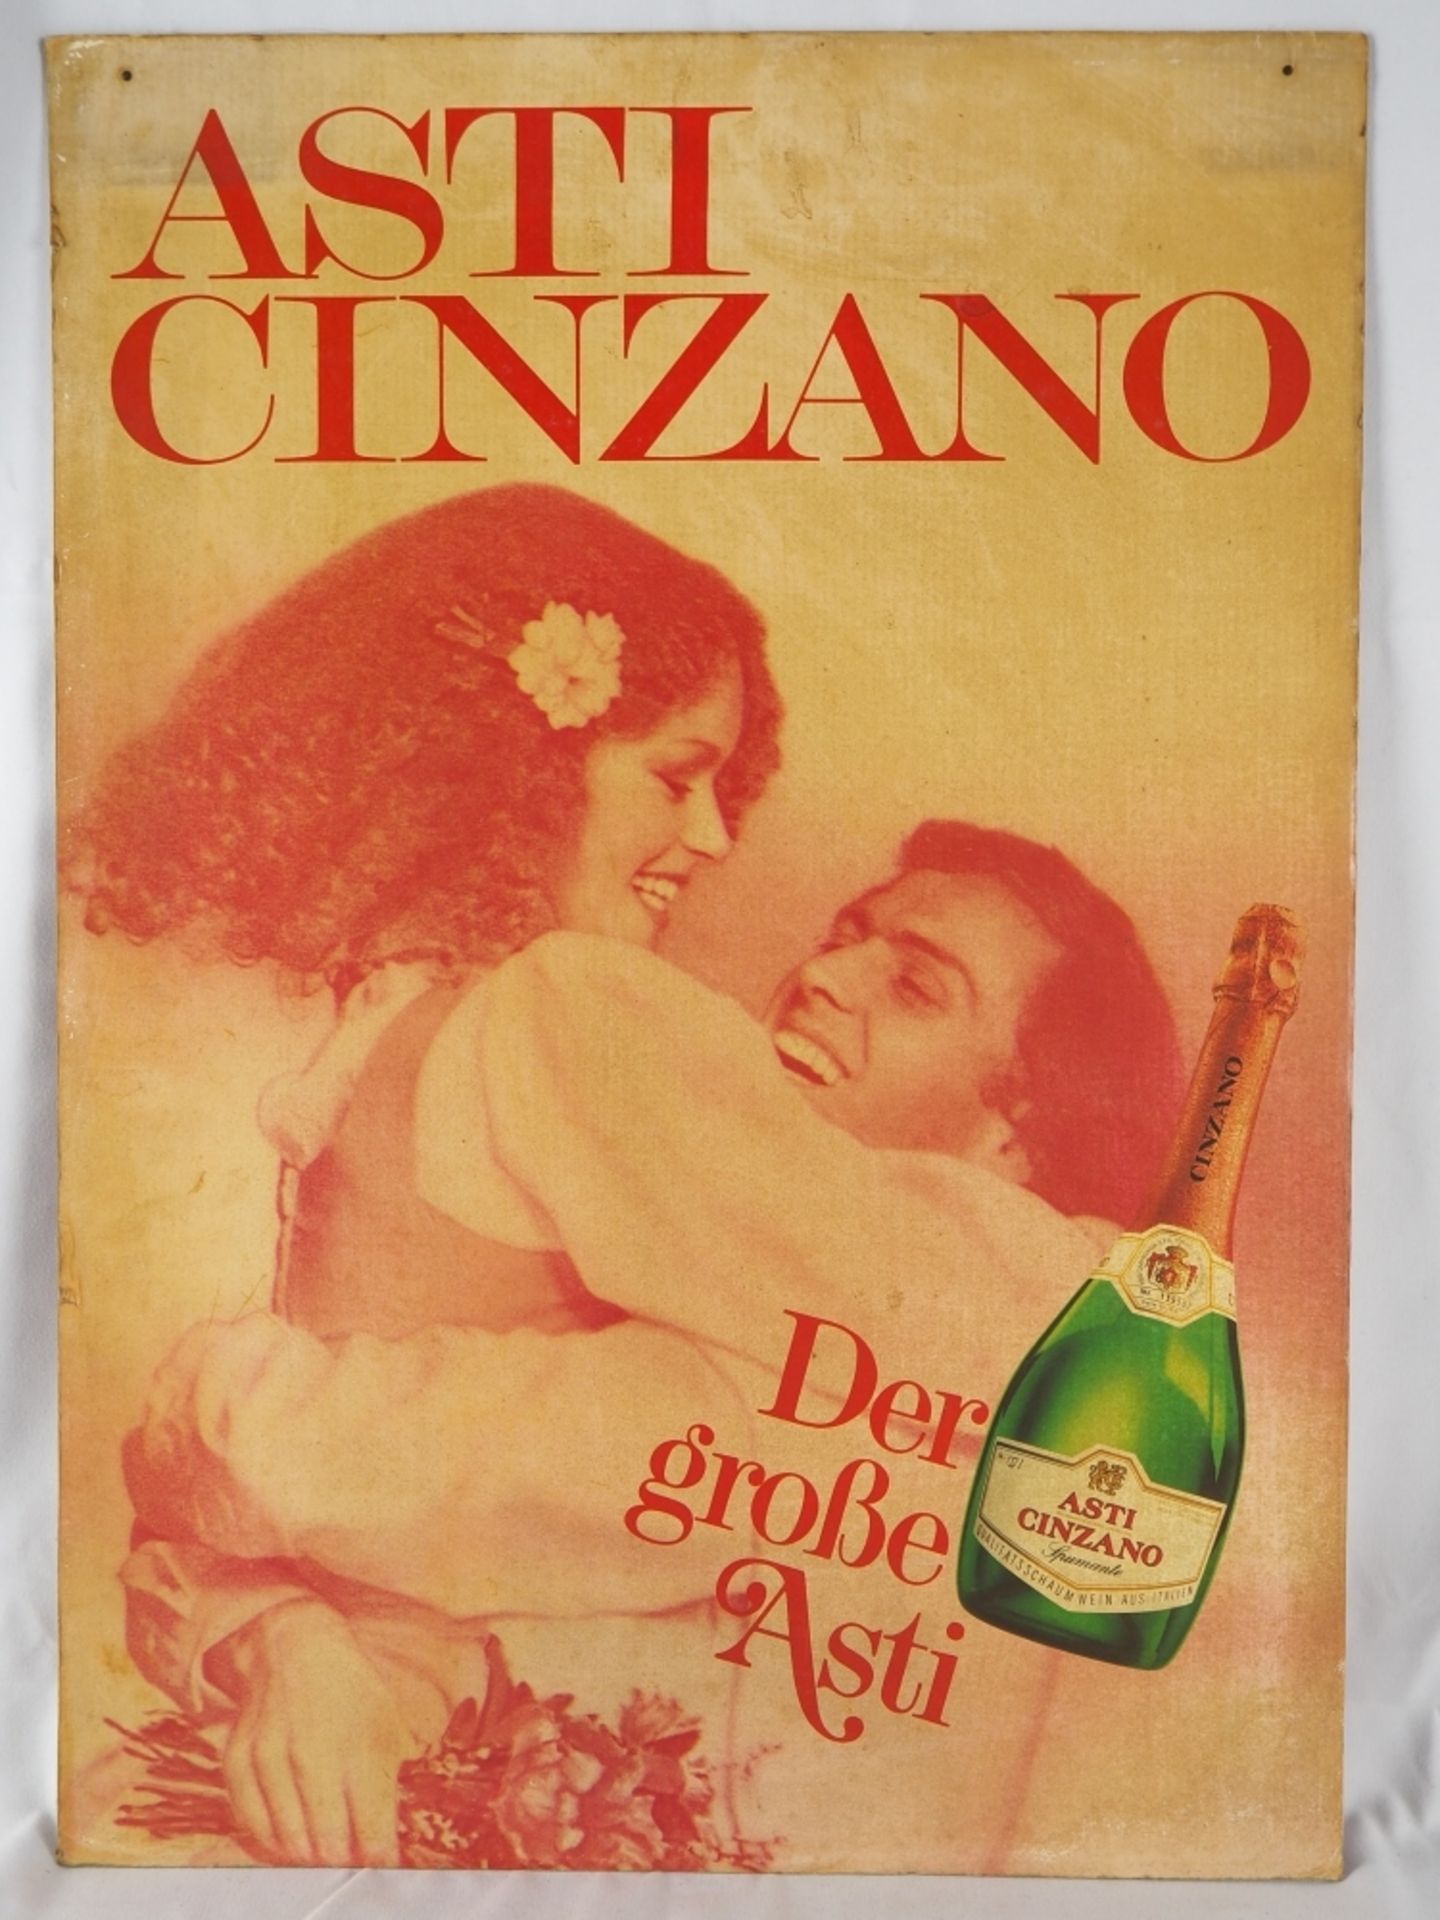 Werbeplakat "Asti Cinzano"auf dickem Karton, beschriftet "Asti Cinzano" und "der große A